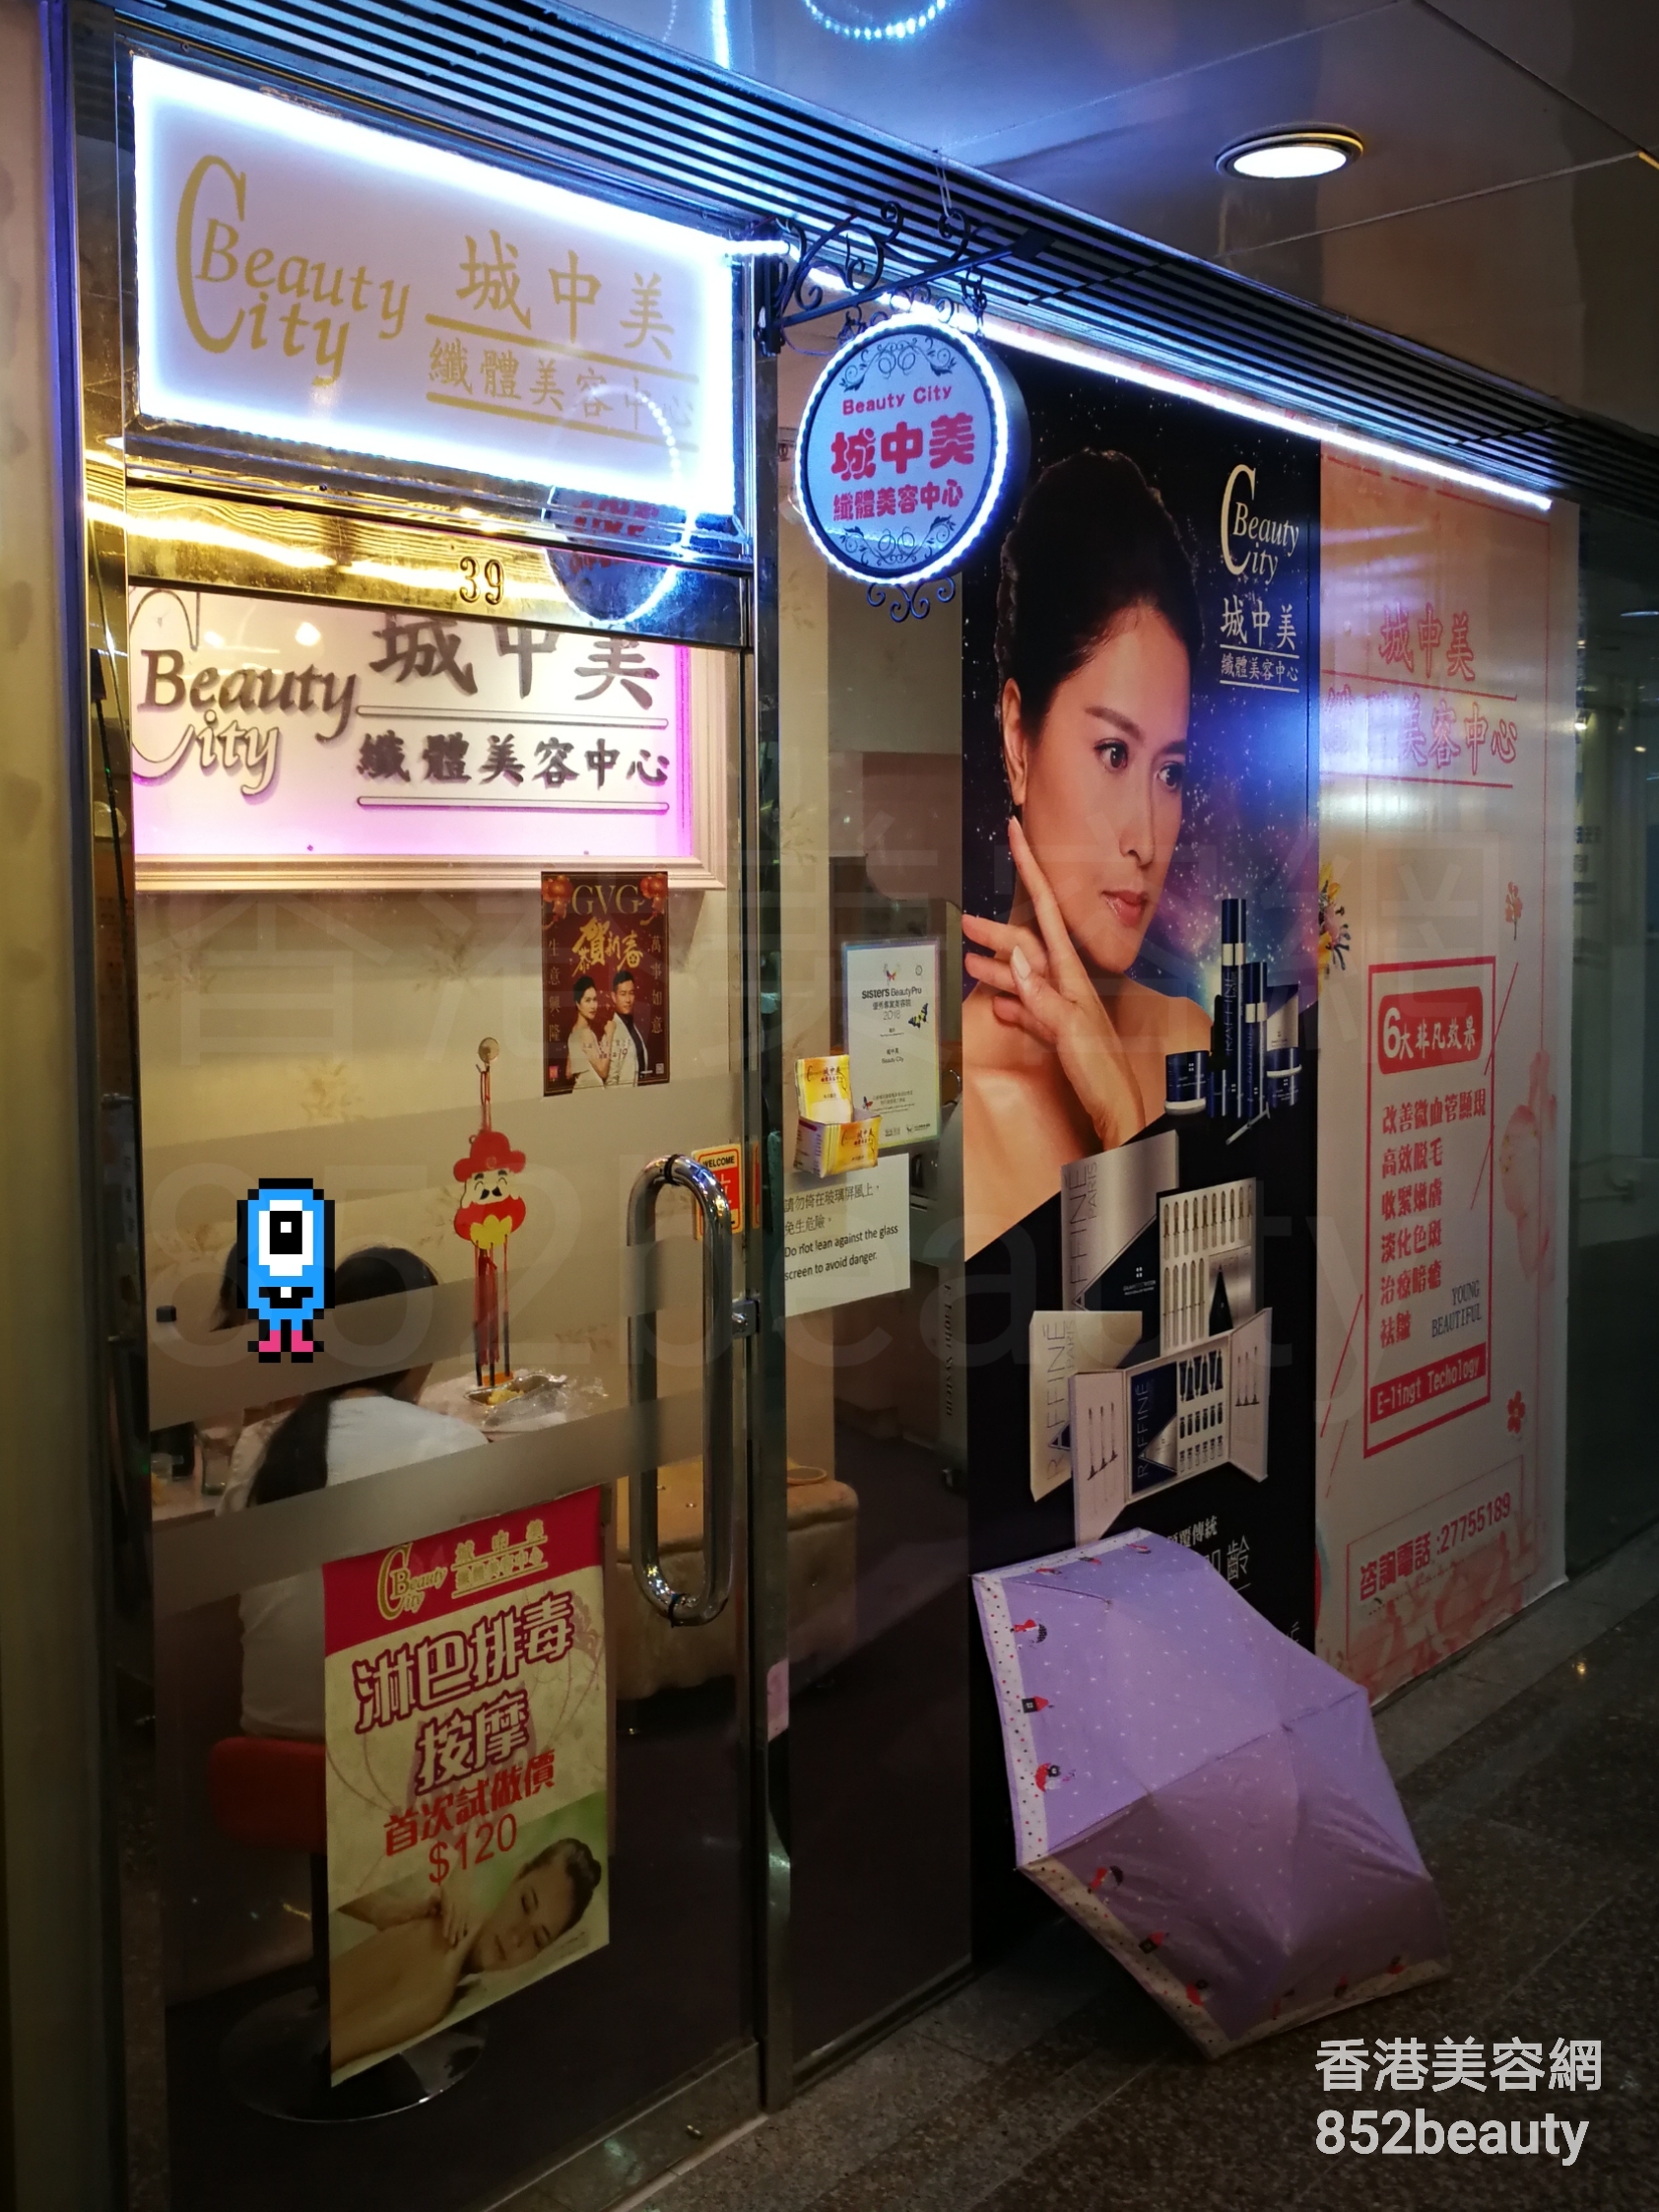 美容院 Beauty Salon: 城中美 纖體美容中心